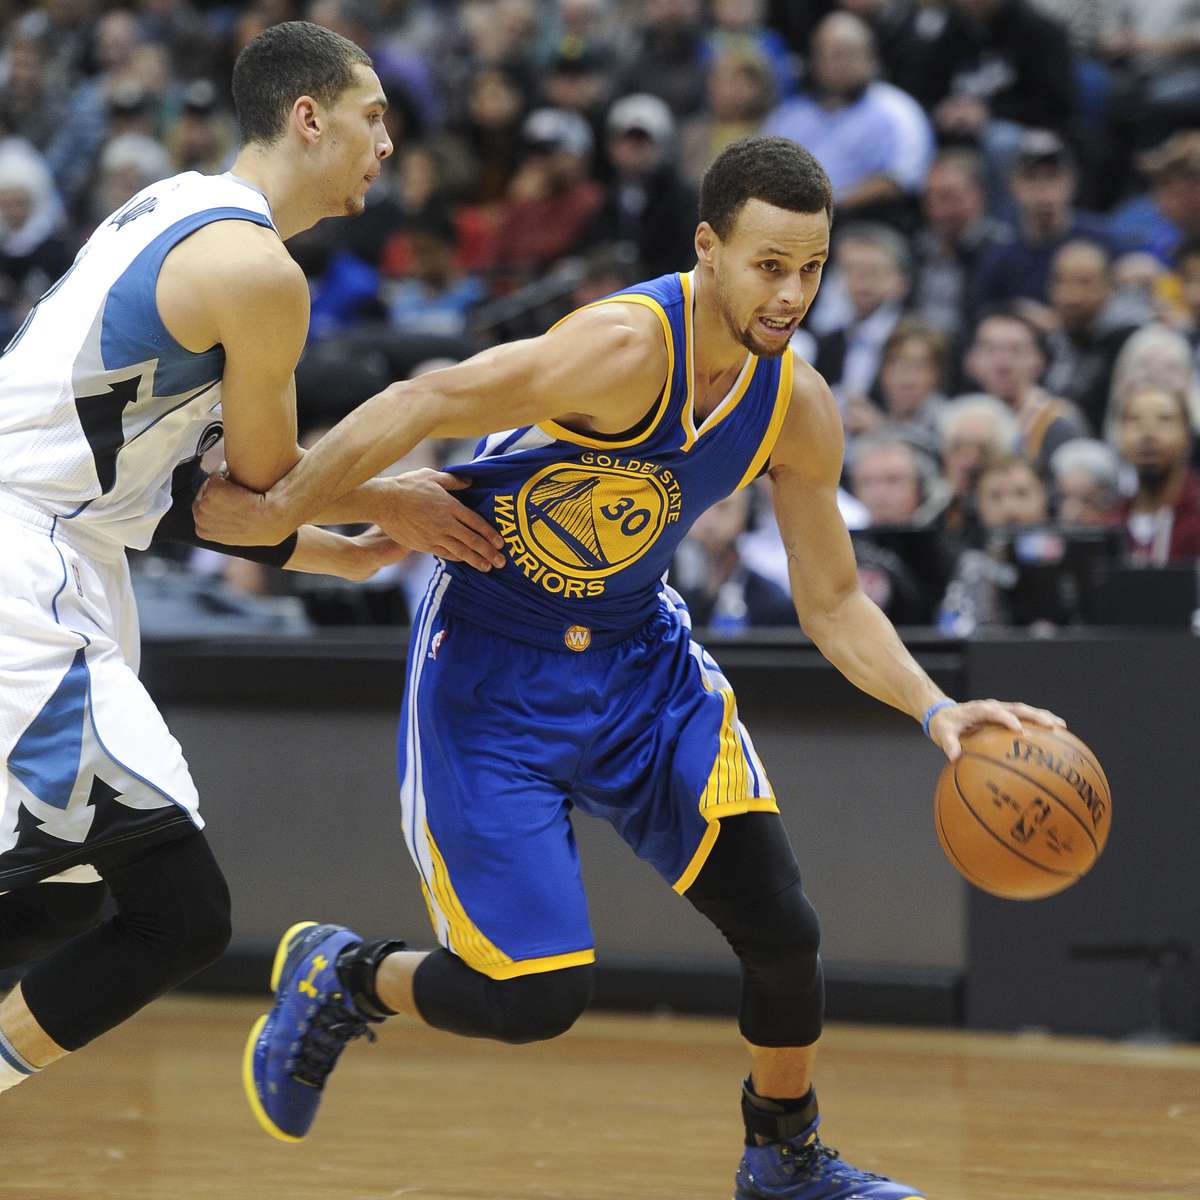 Spalding Bola Basquete Jogador NBA Stephen Curry